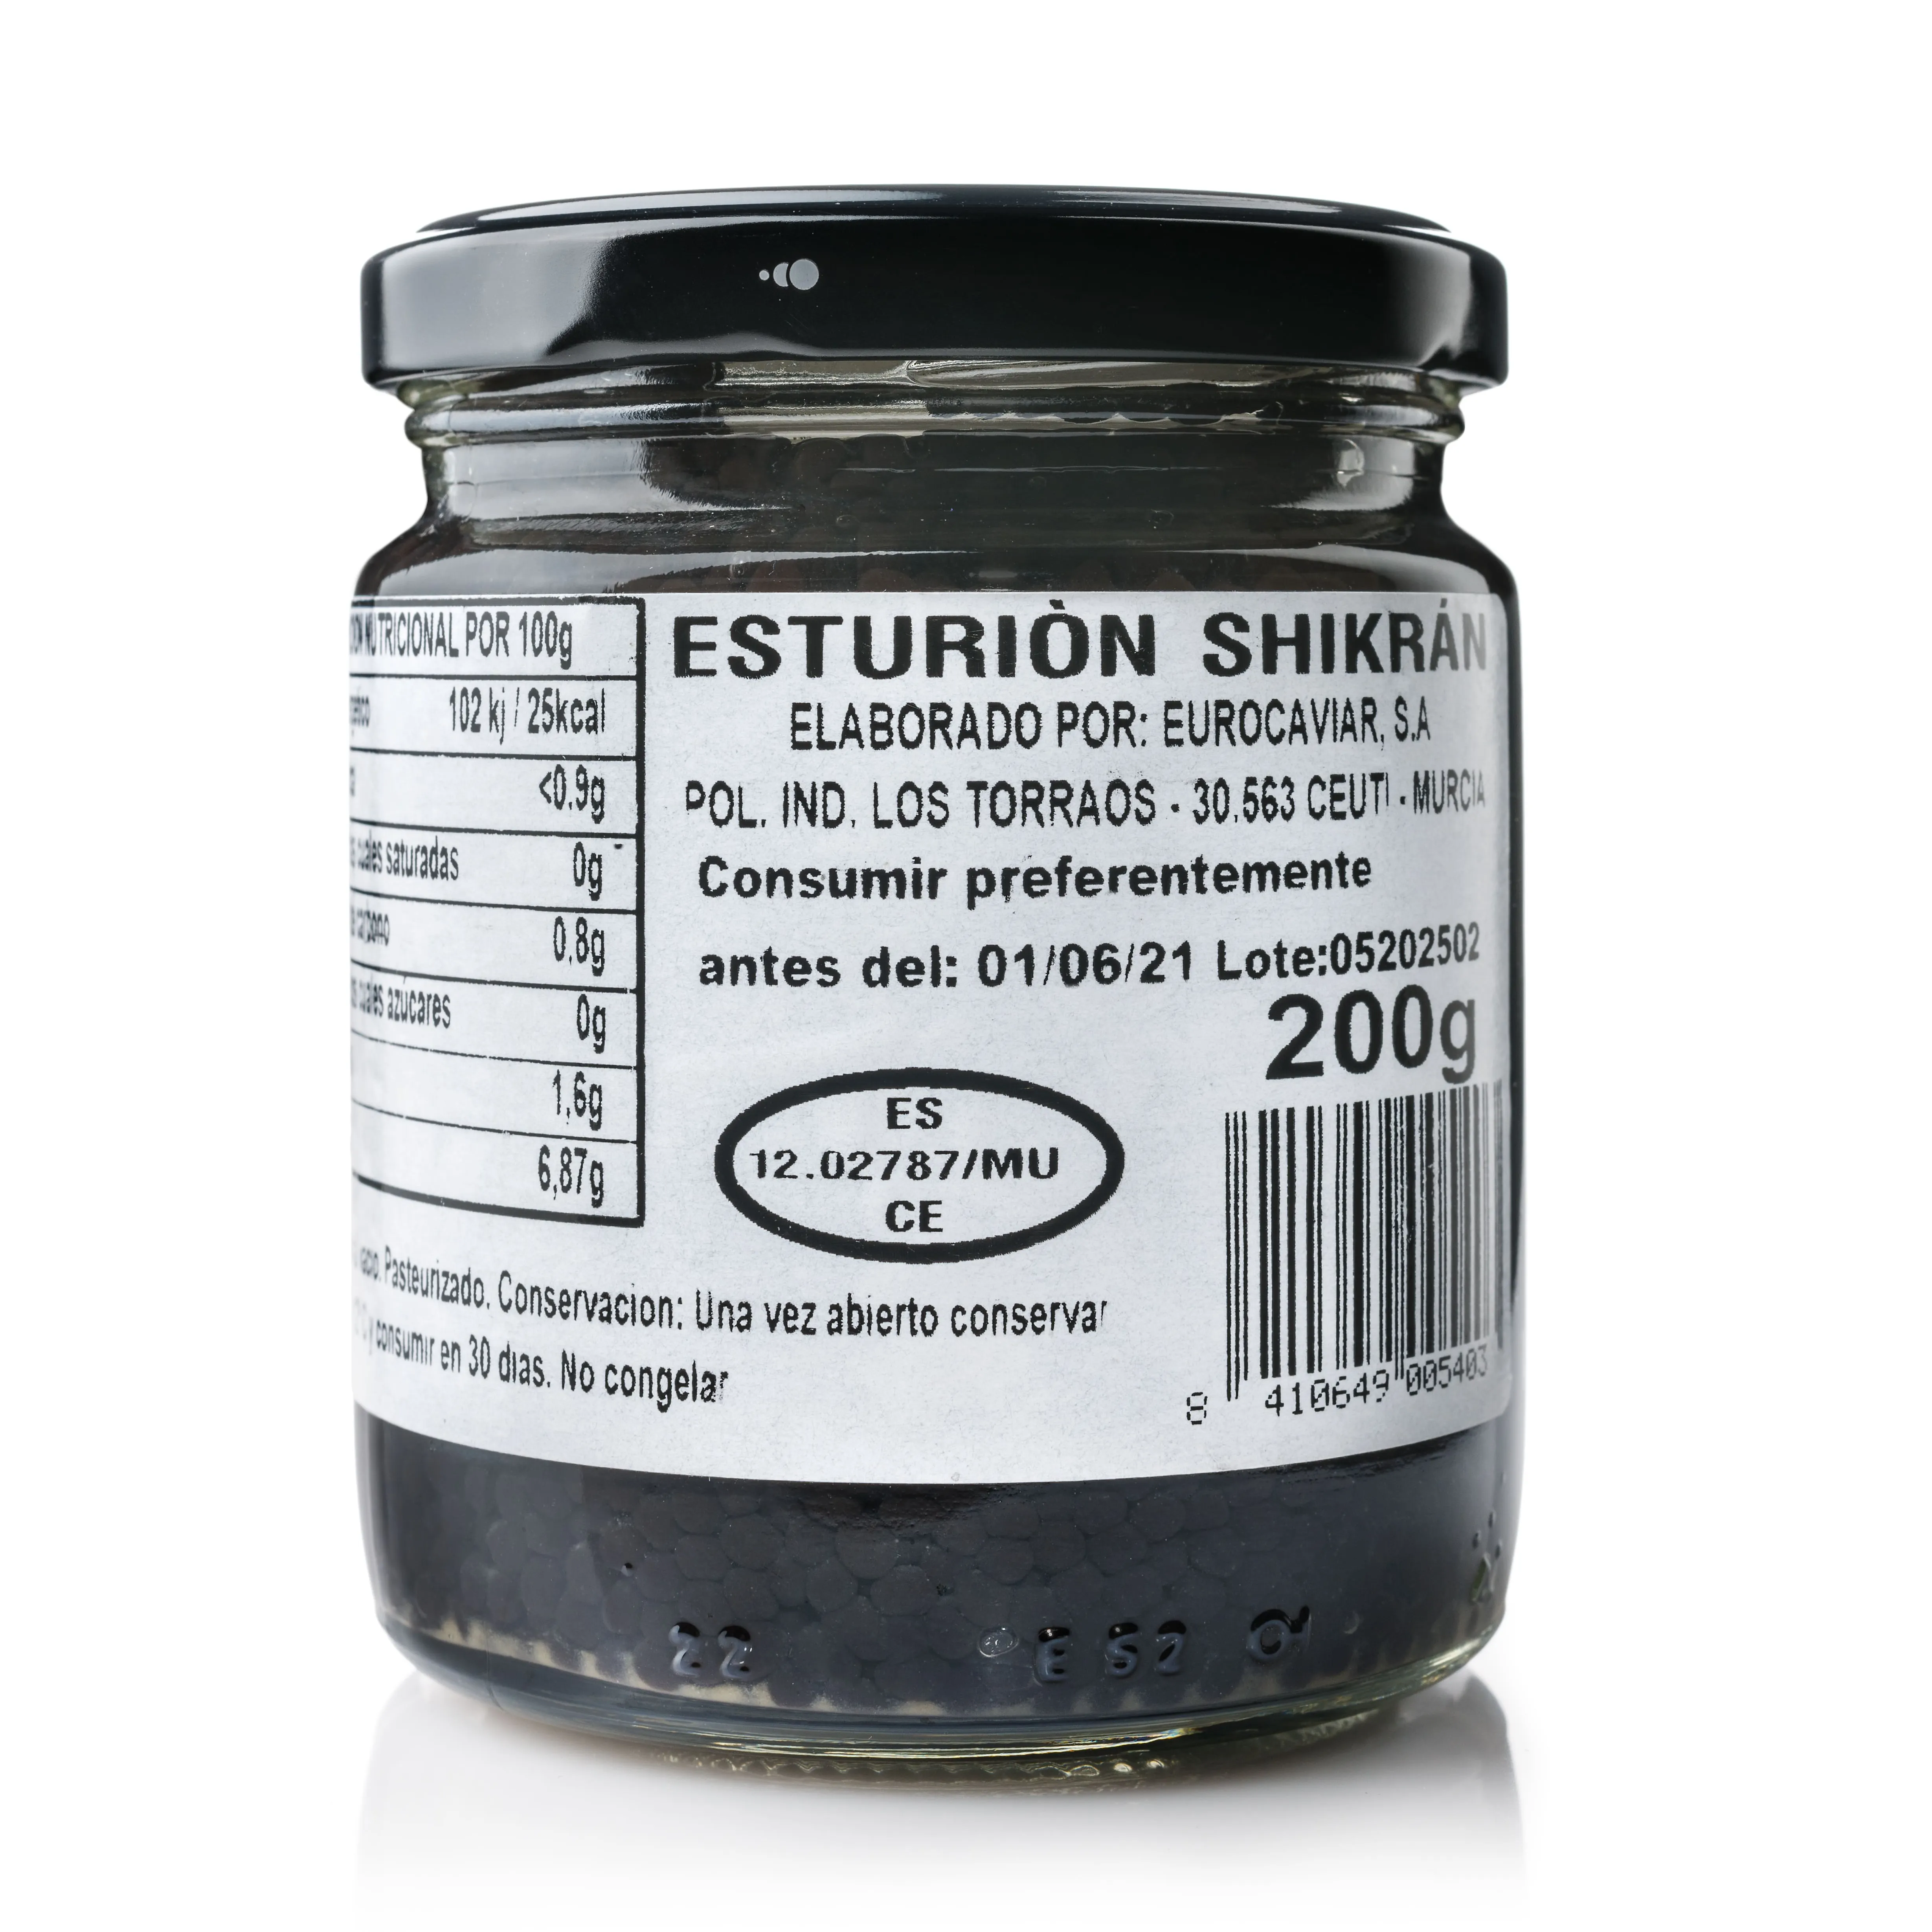 Bem conhecido em espanha sturgeon shikran 200g branca sturgeon em esferas para serviço de comida